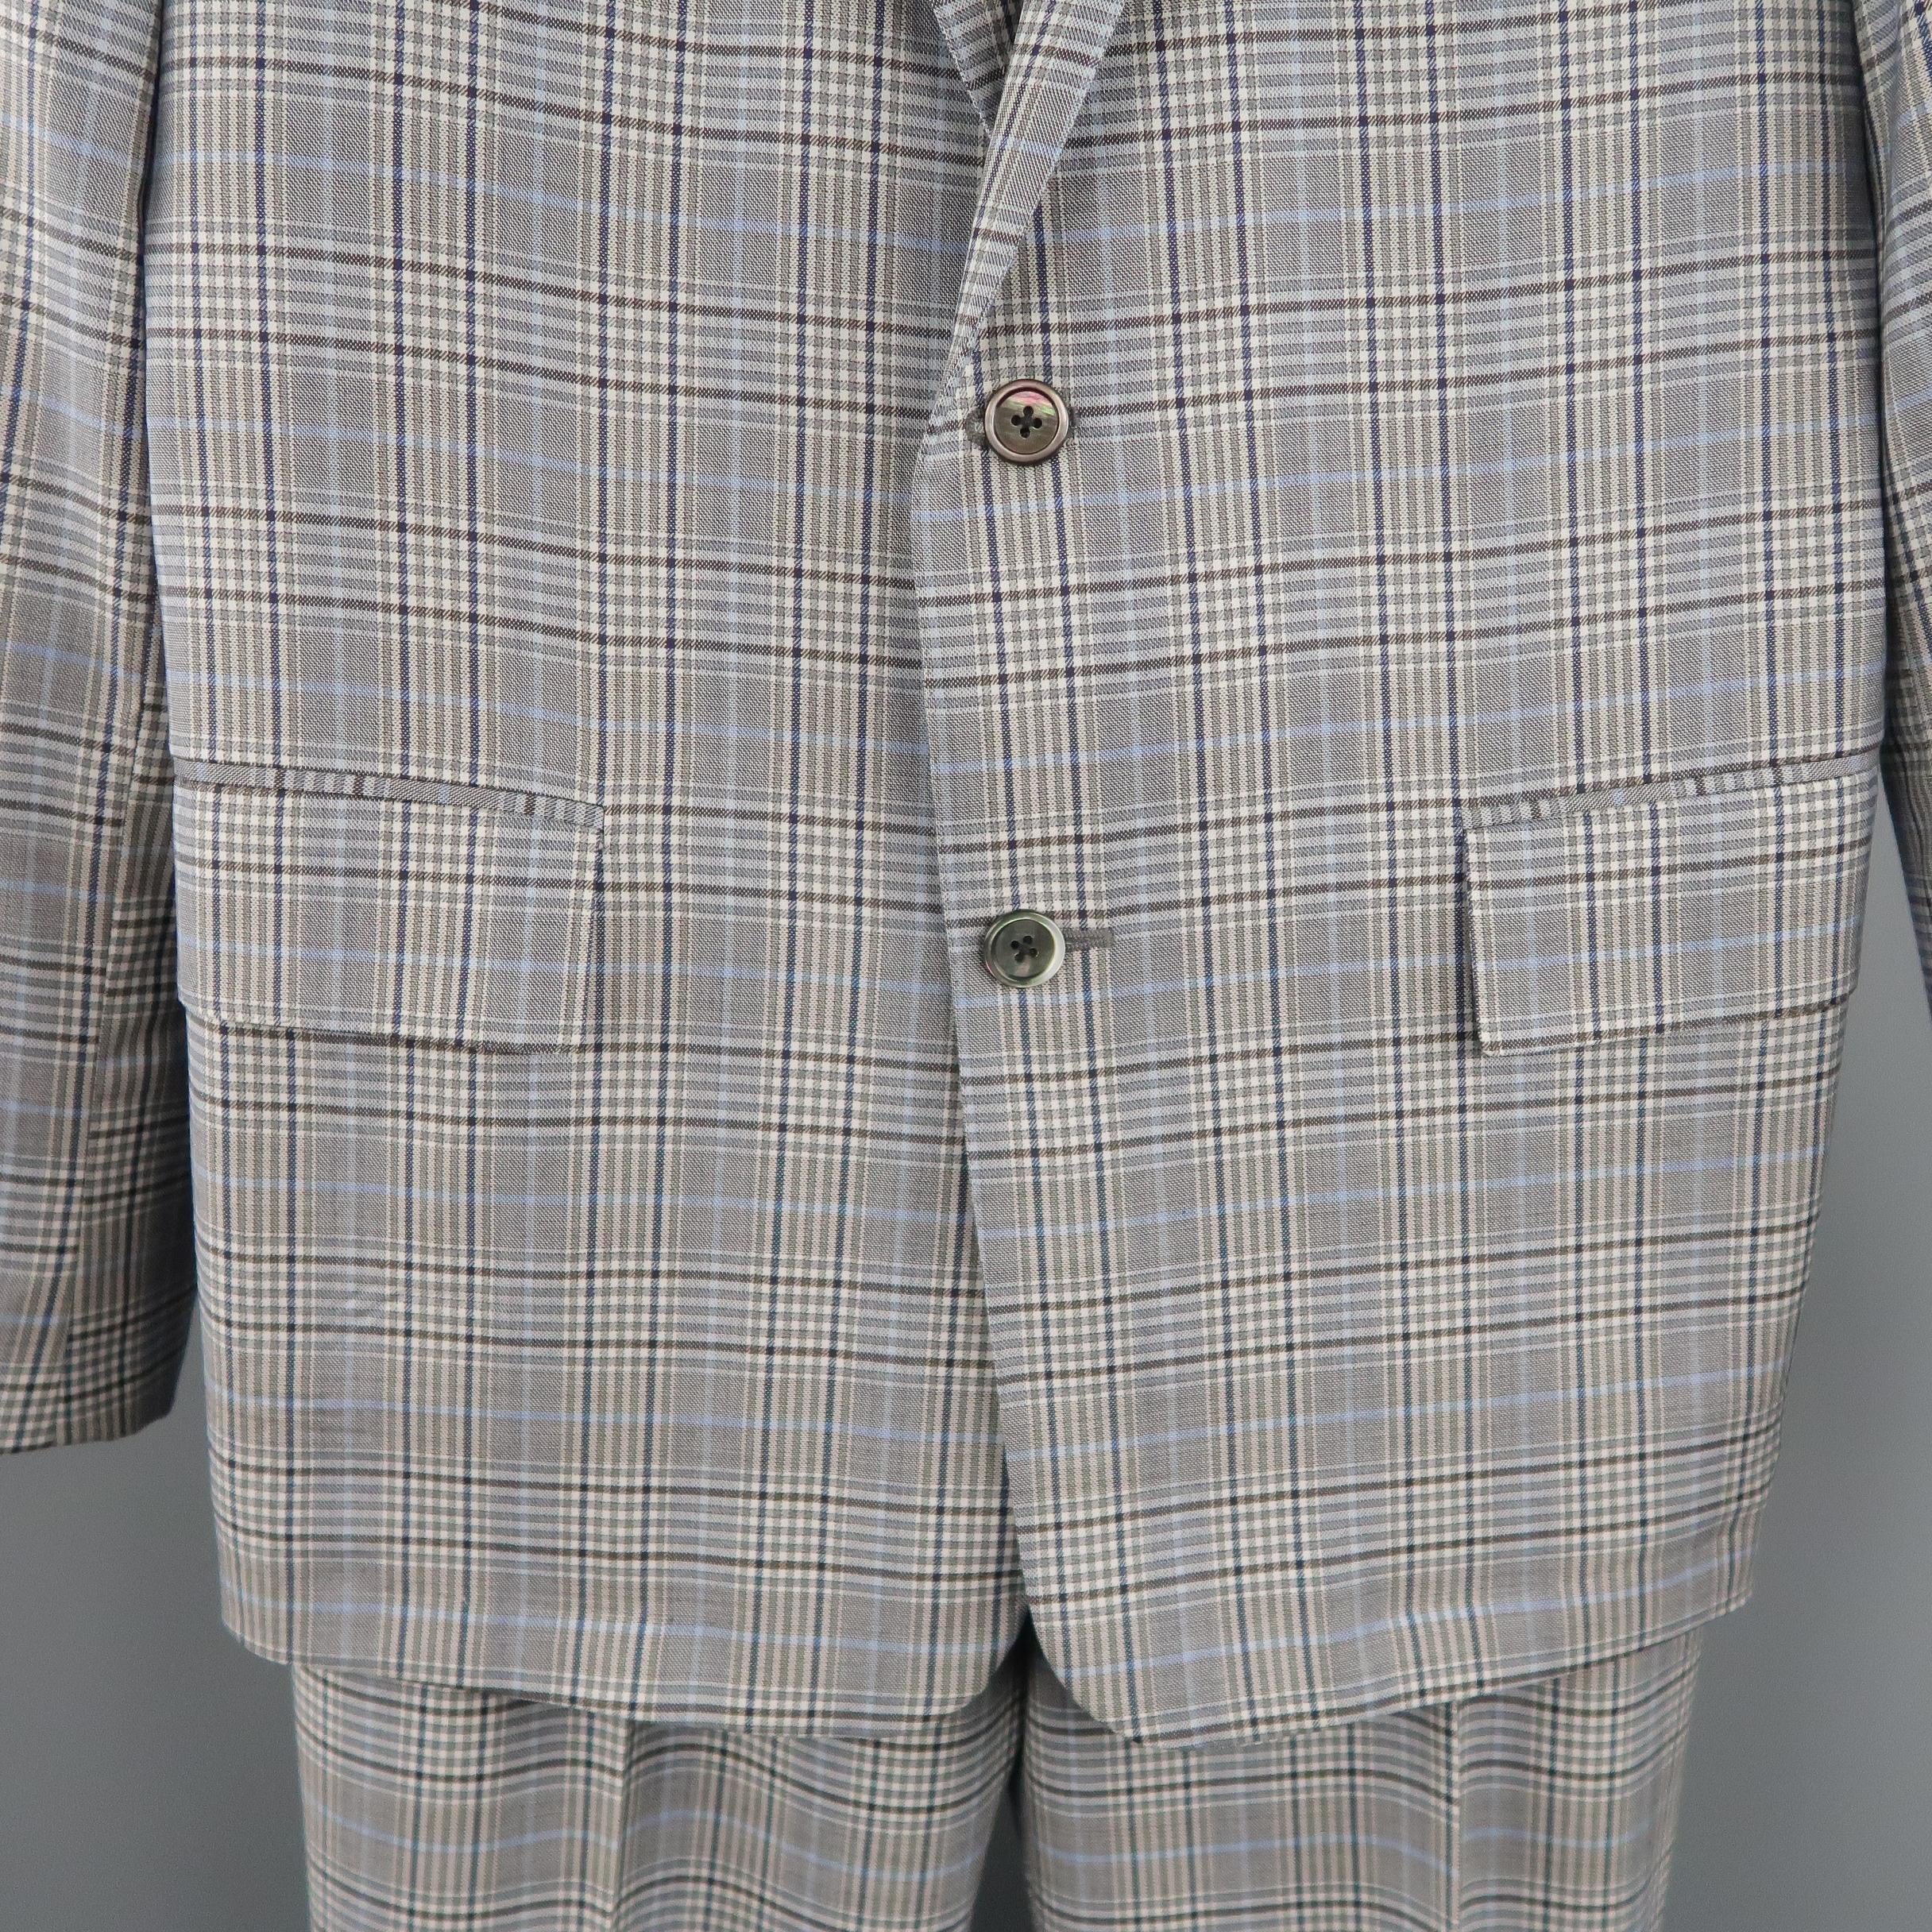 Men's BROOKS BROTHERS 38 Short Gray & Blue Plaid Wool Blend Notch Lapel Suit 1